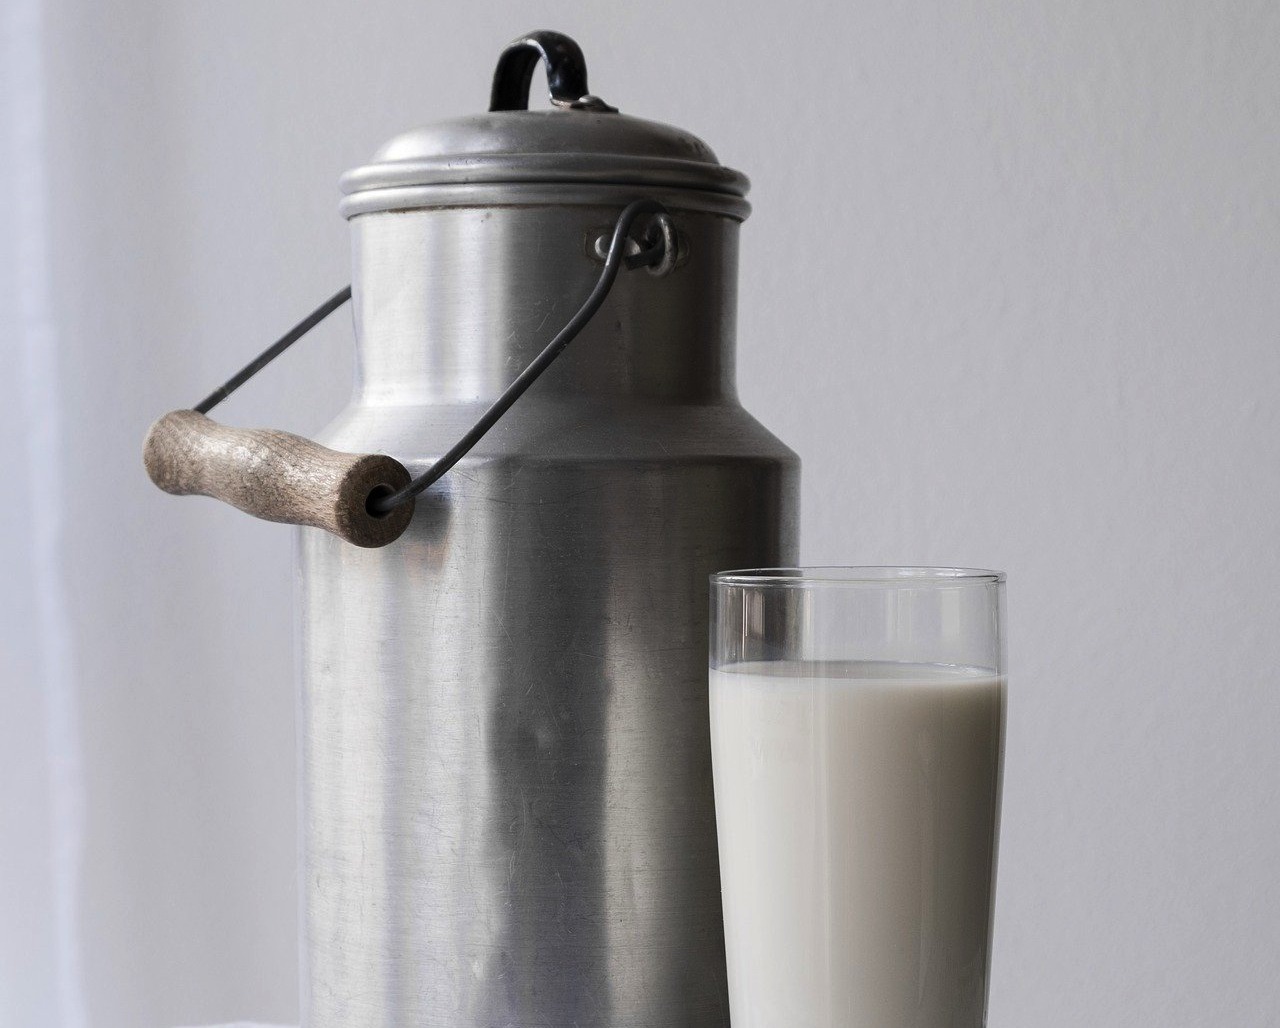 O consumo brasileiro de leite ainda está abaixo do ideal preconizado pela Organização Mundial de Saúde (OMS), que é de 200 litros por pessoa por ano, afirma o diretor da SNA, Alberto Figueiredo. Foto: Pixabay